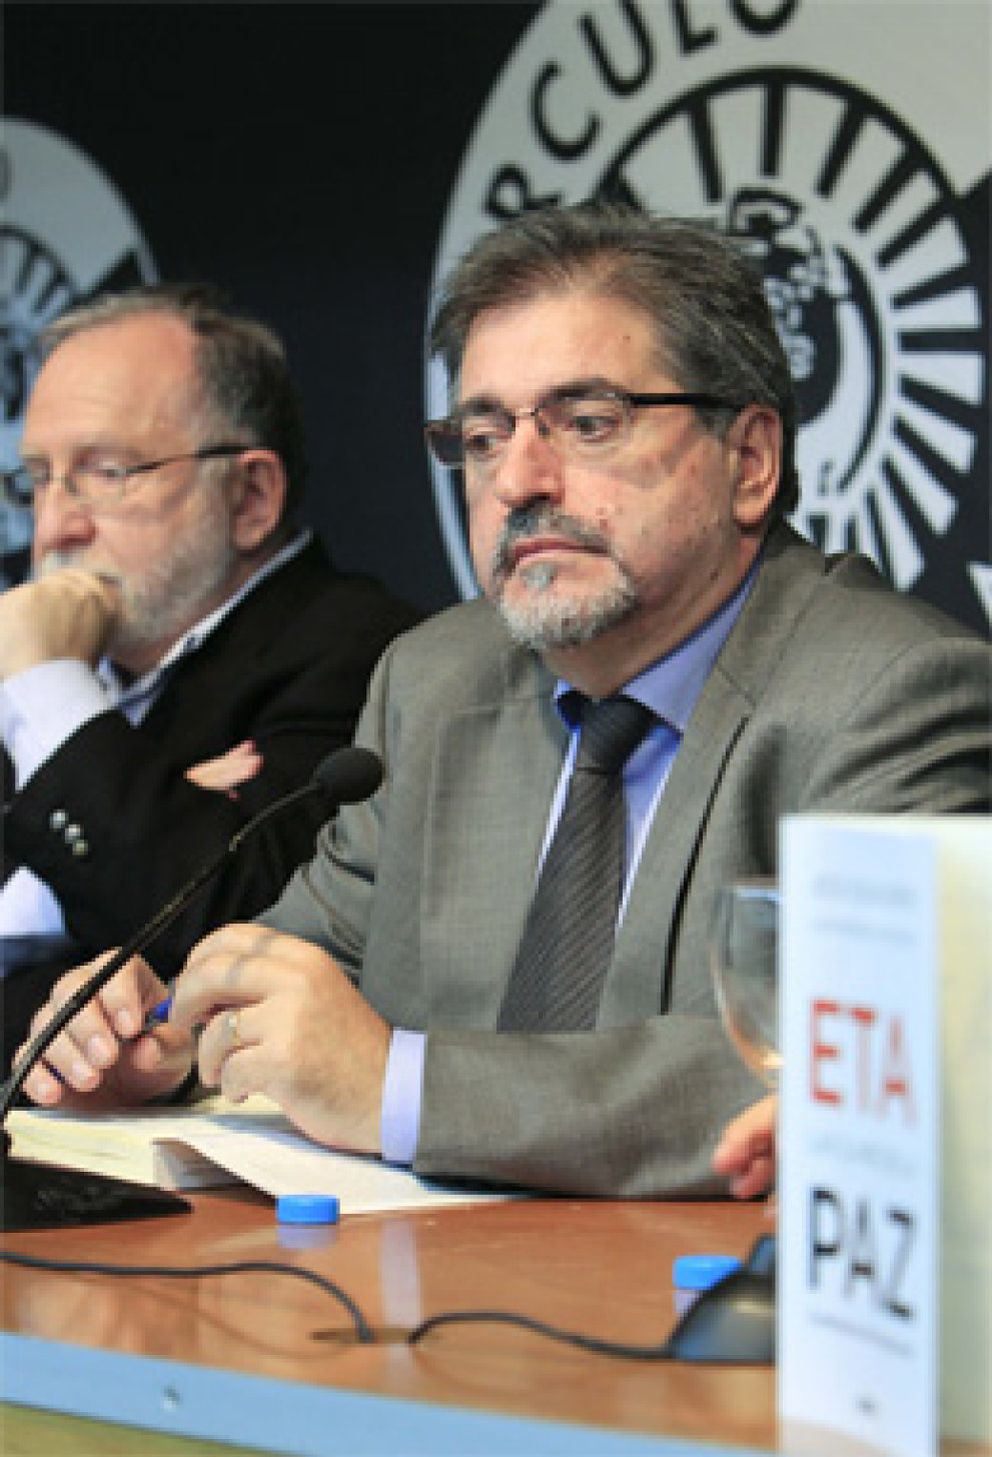 Foto: Presiones políticas vetan un documental sobre Eguiguren y la negociación con ETA